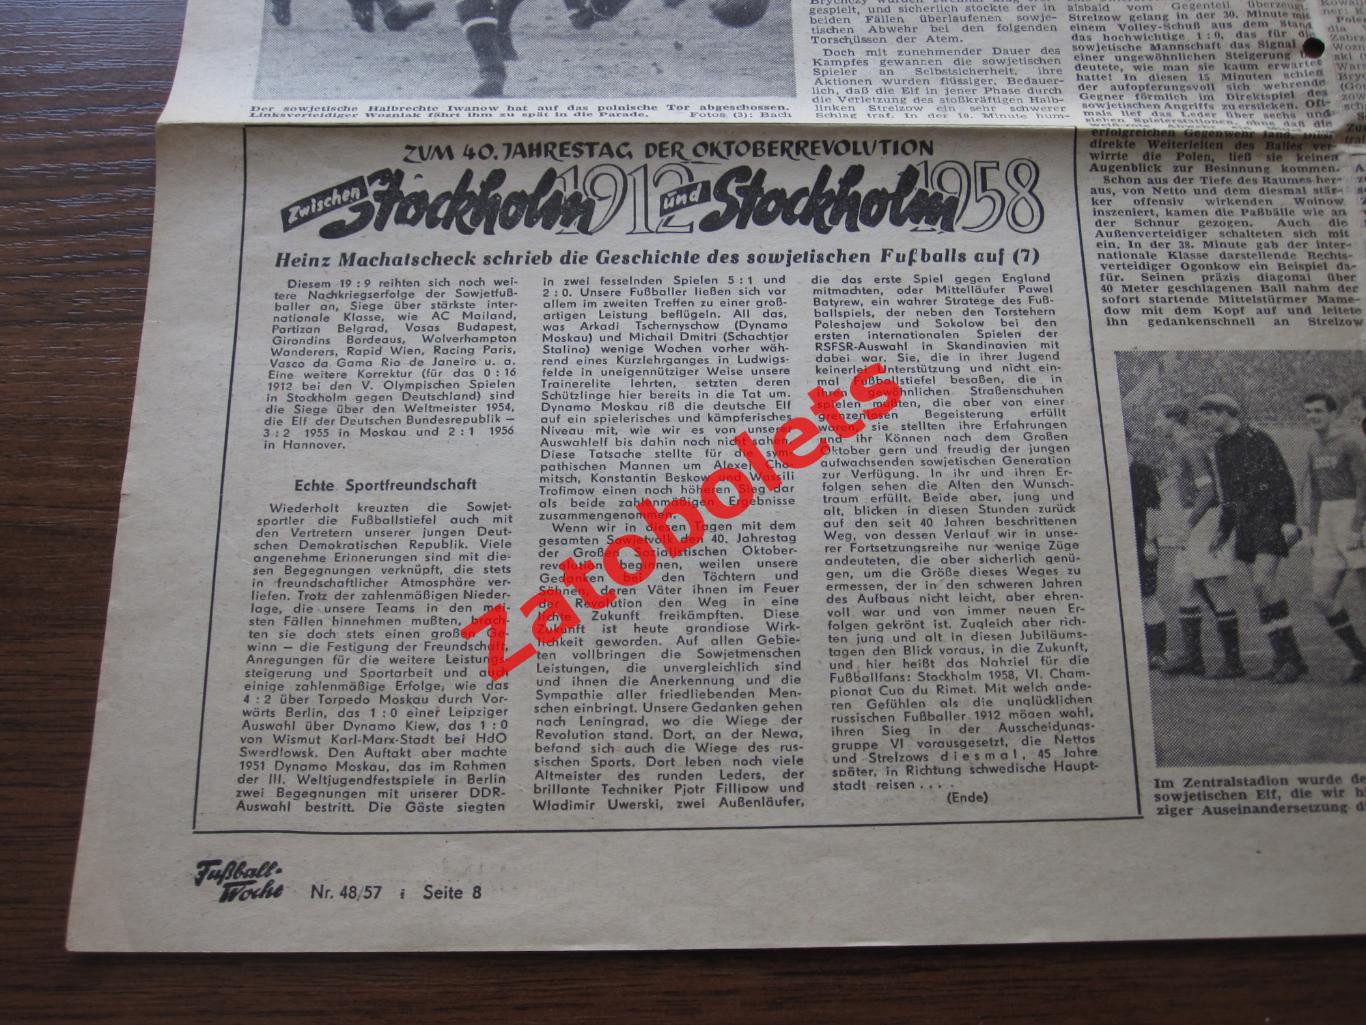 СССР - Польша 1957 Разворот газеты Fussball woche с отчетом о матче в Лейпциге 2